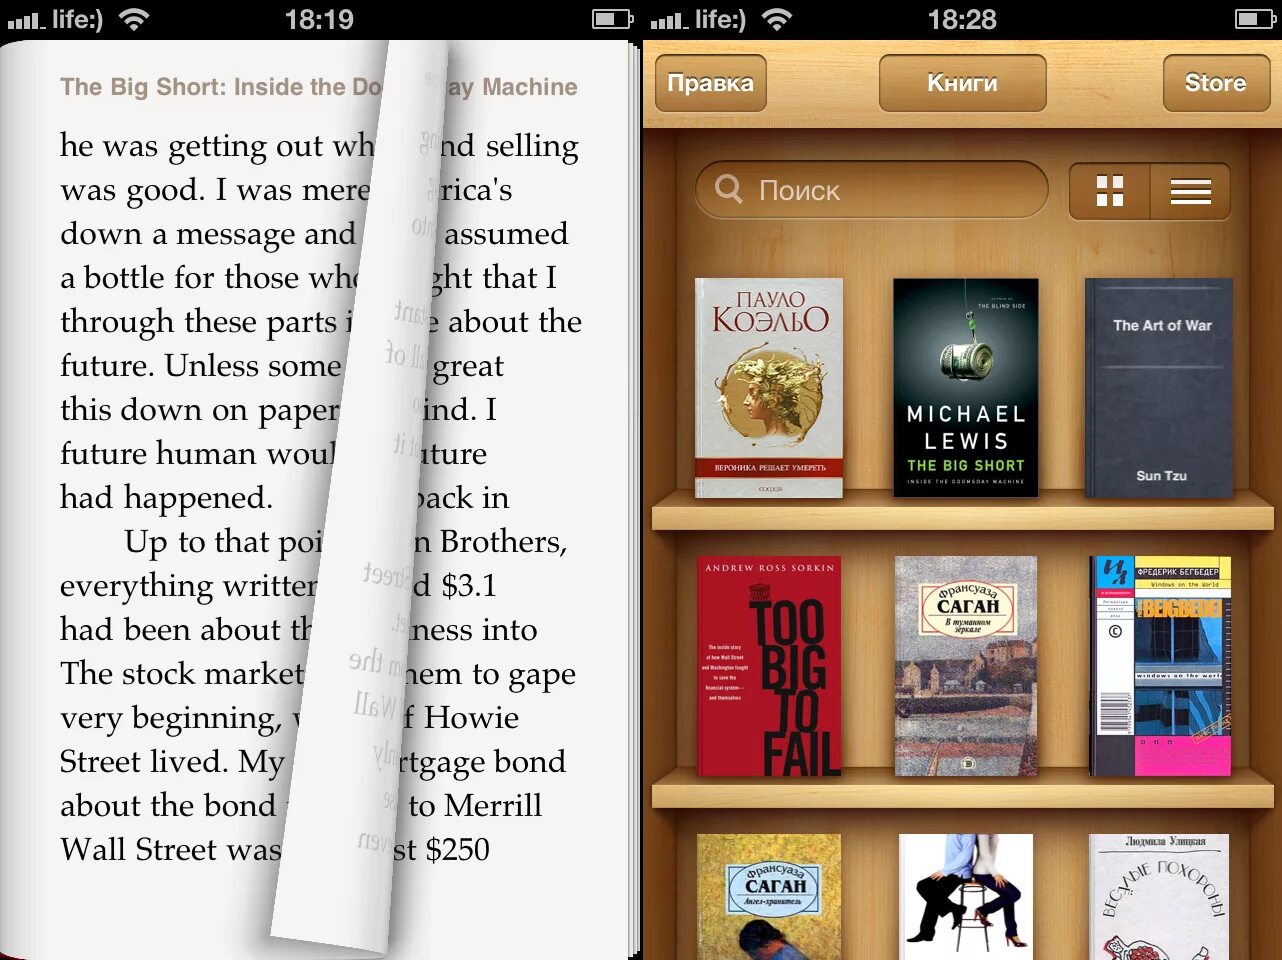 Приложение для чтения книг оффлайн. Приложение для чтения книг. Читалка для электронных книг. Удобное приложение для чтения книг. Читалка для электронных книг приложение.